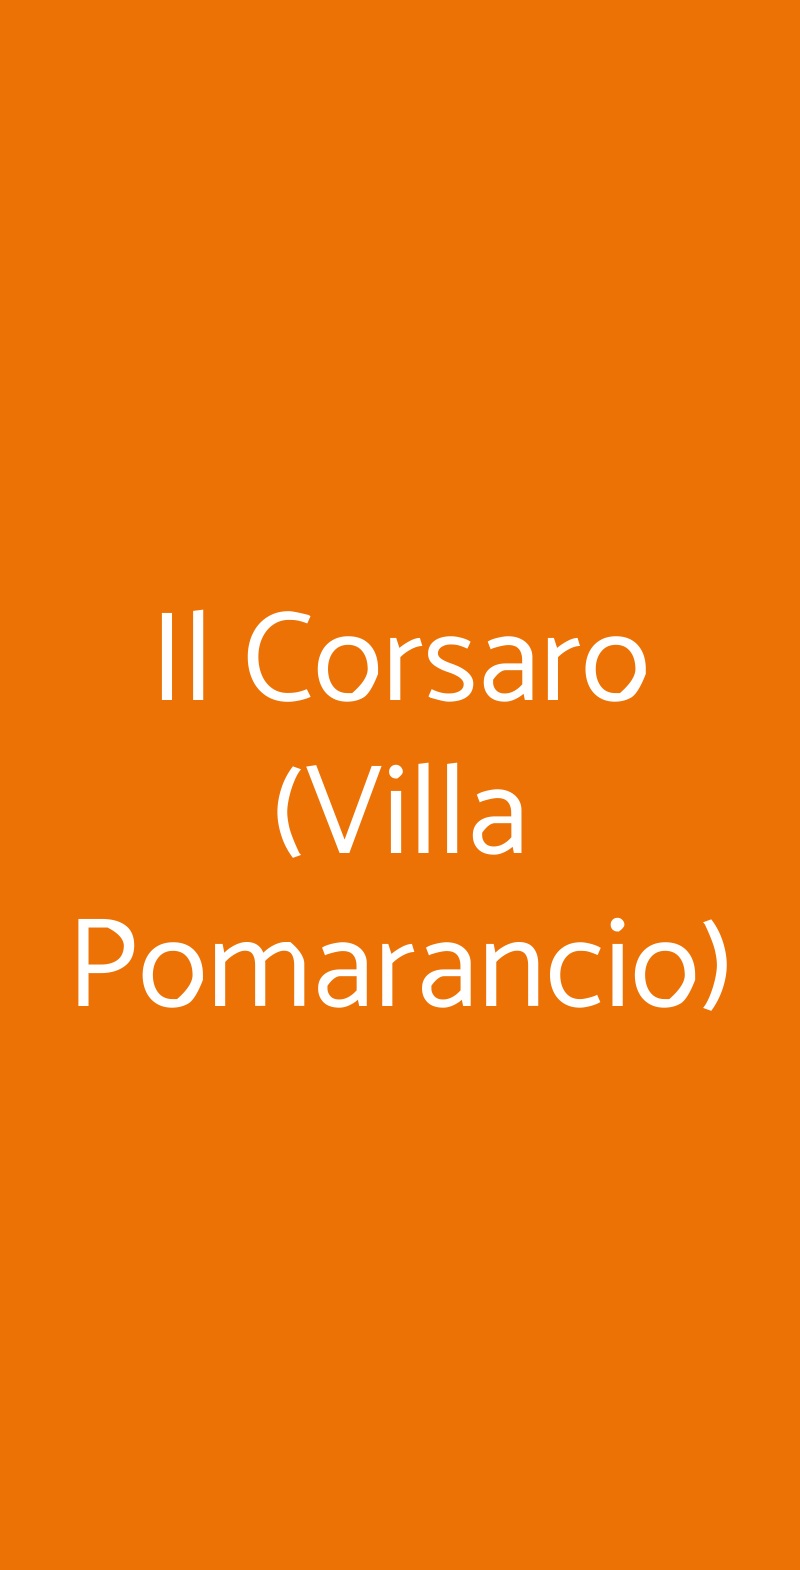 Il Corsaro (Villa Pomarancio) Foiano della Chiana menù 1 pagina